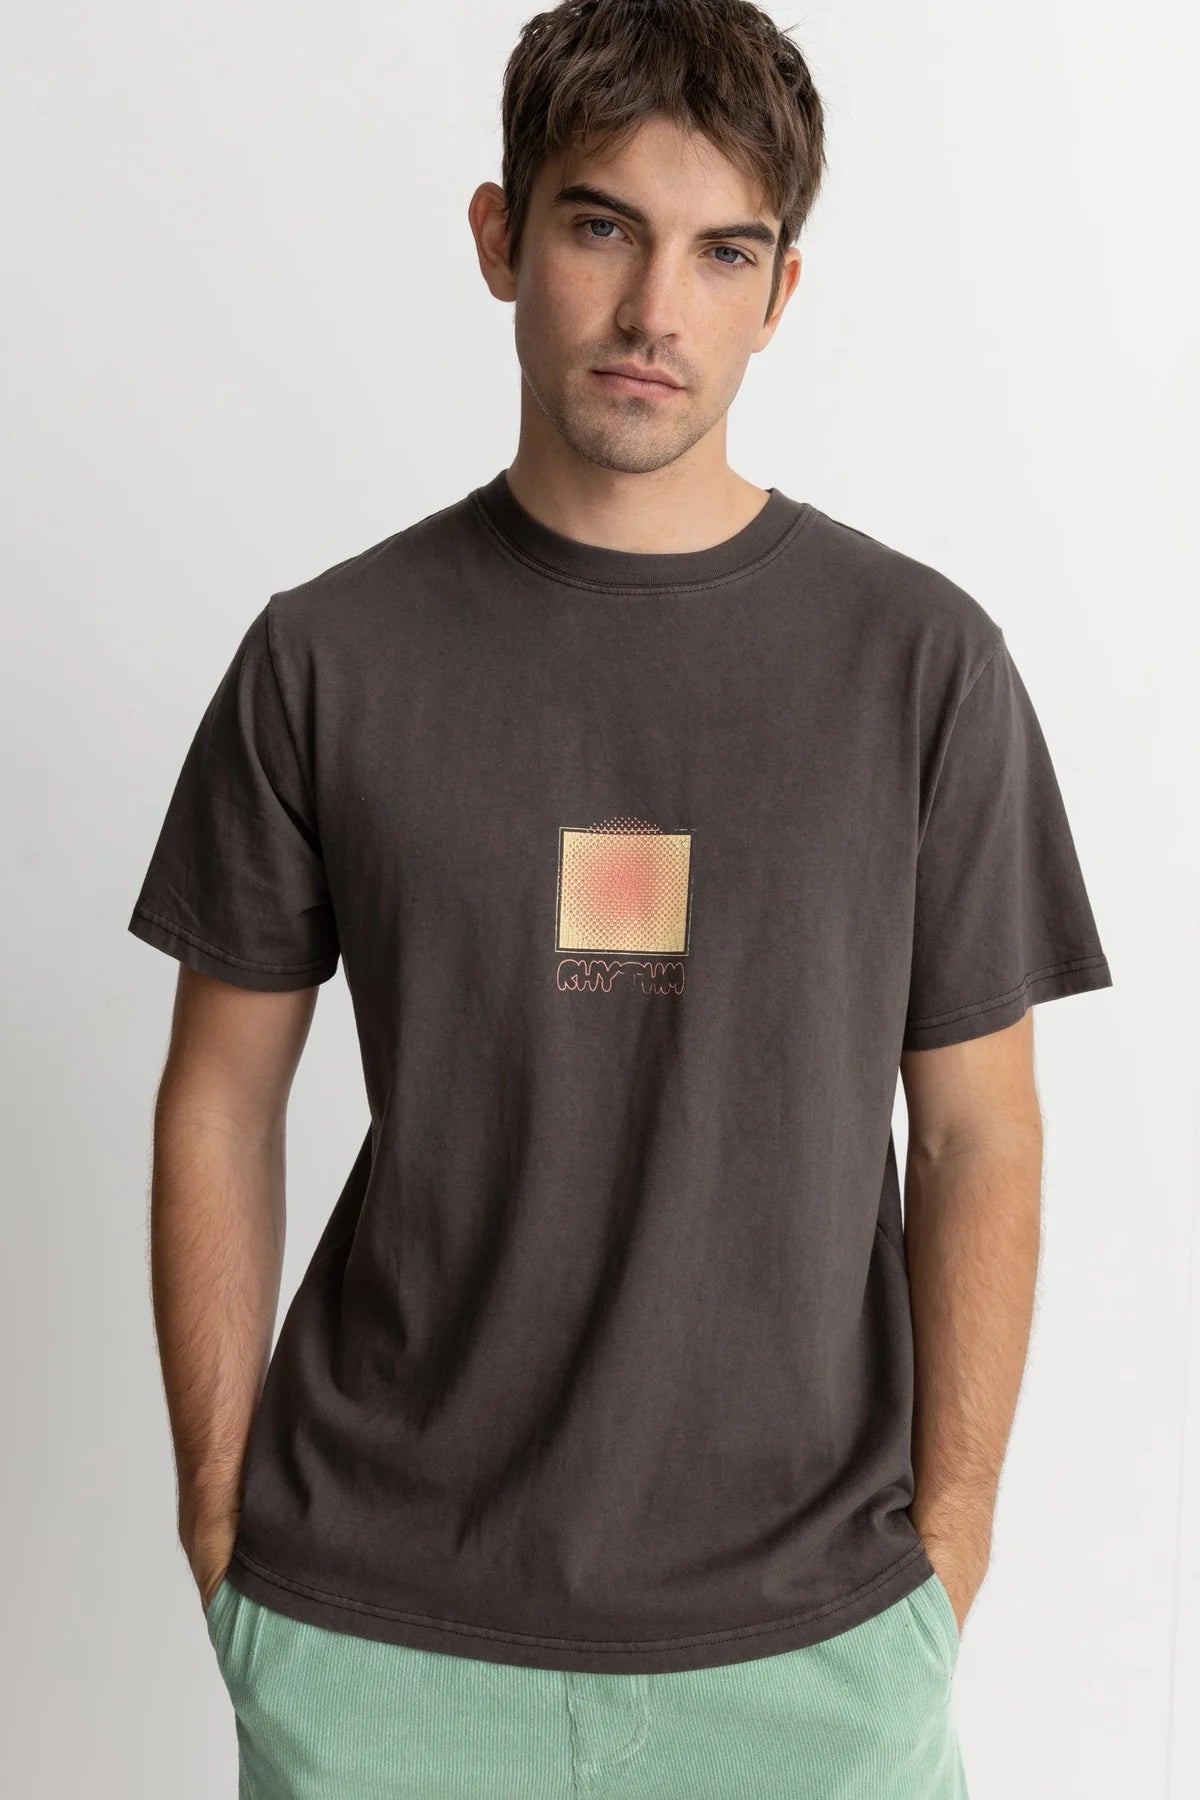 RHYTHM Halos Vintage T-Shirt Vintage Black Men's Short Sleeve T-Shirts Rhythm 